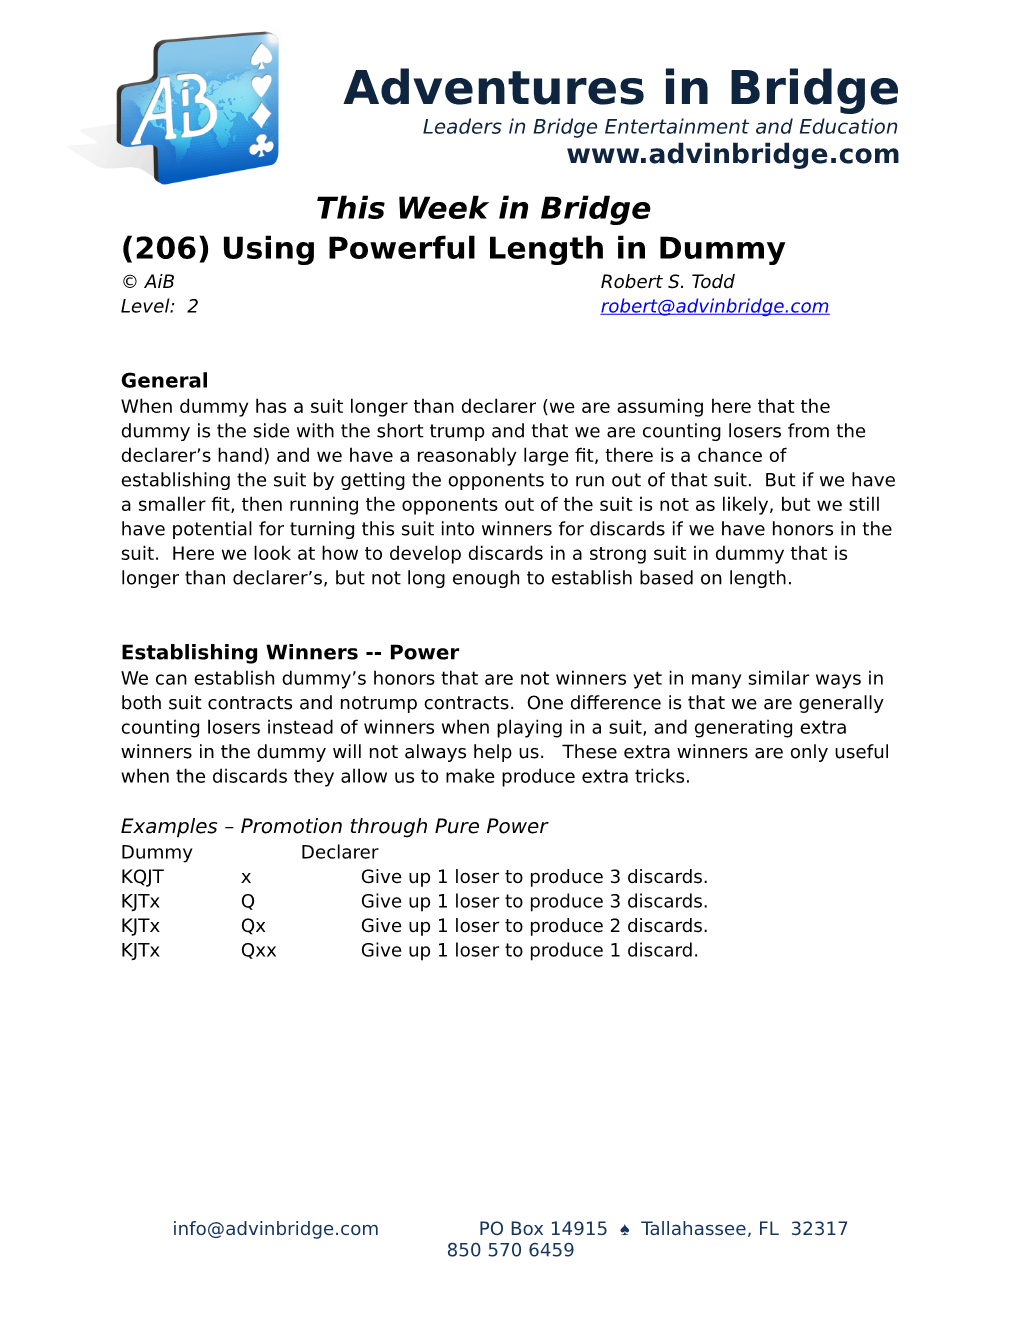 Adventures in Bridge Leaders in Bridge Entertainment and Education This Week in Bridge (206) Using Powerful Length in Dummy © Aib Robert S